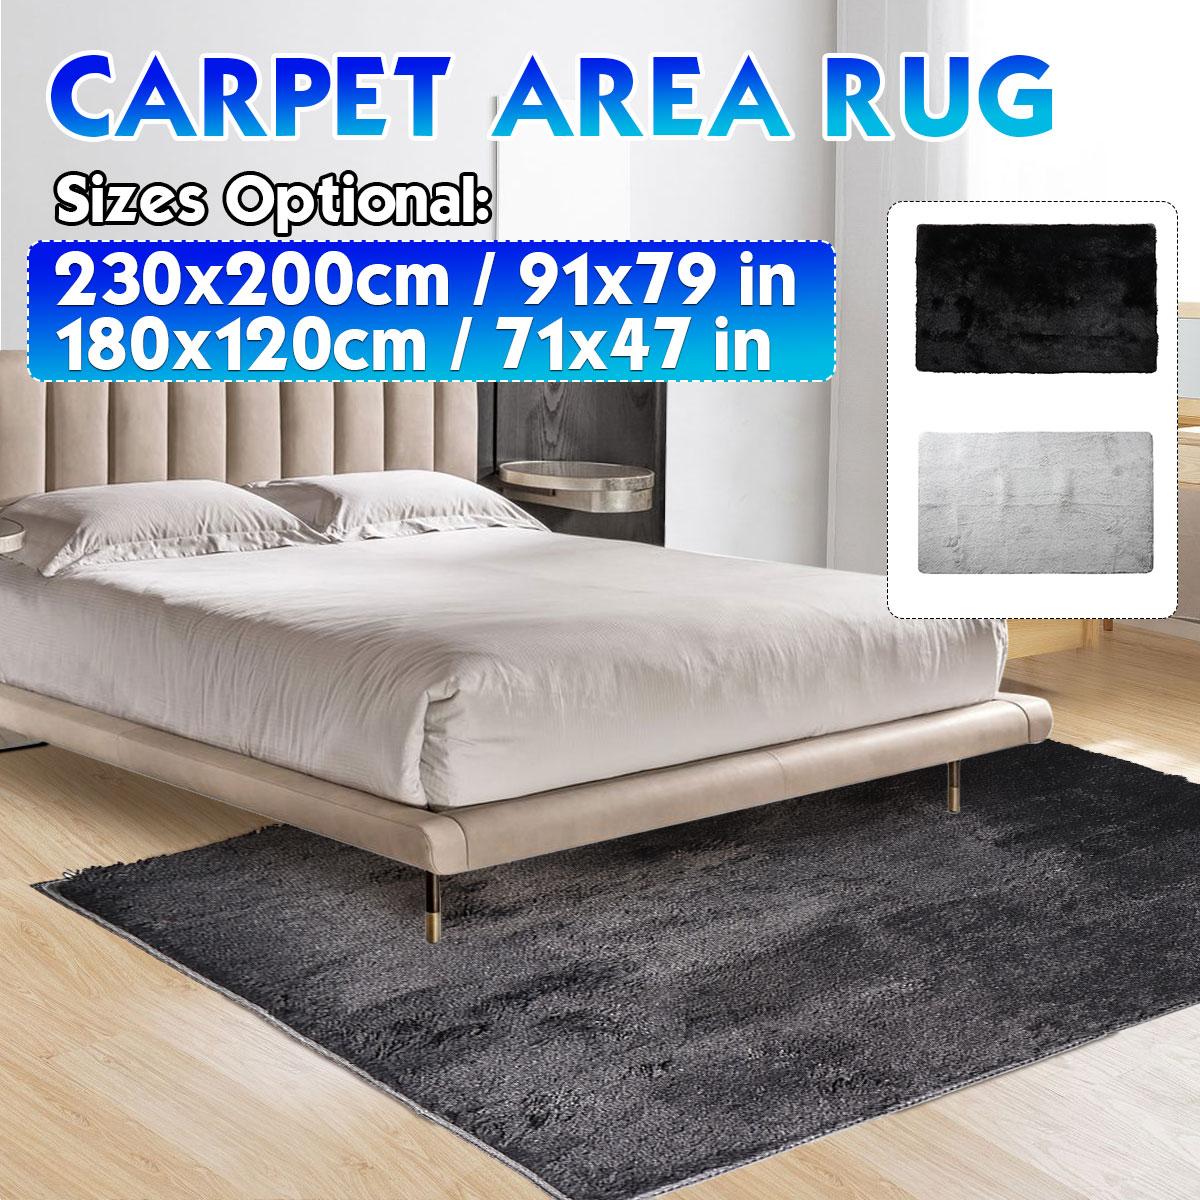 Floor-Rug-Shaggy-Carpet-Area-Rug-Living-Room-Mat-Bedroom-Soft-Decor-2-Colors-1789373-1